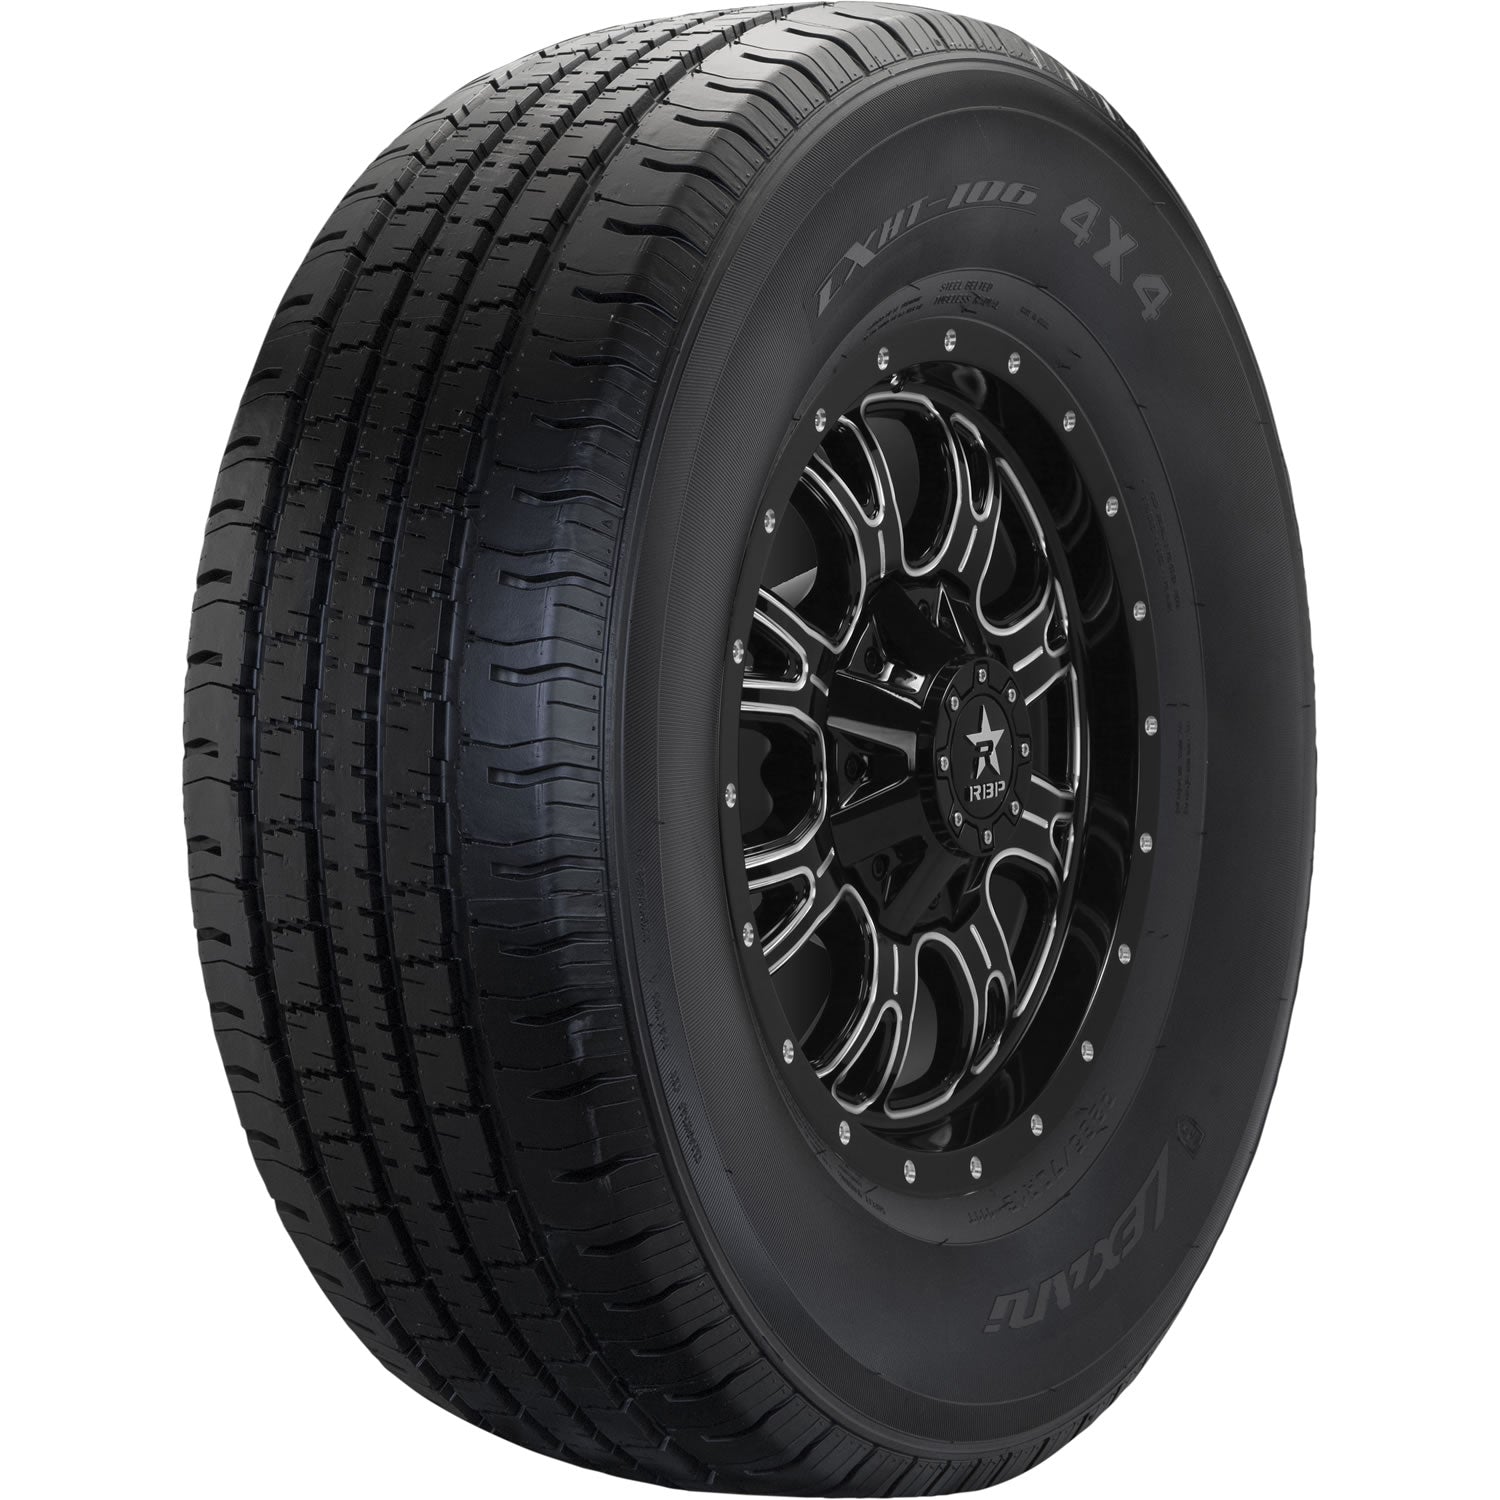 LEXANI LXHT-106 P265/70R16 (30.6X10.7R 16) Tires